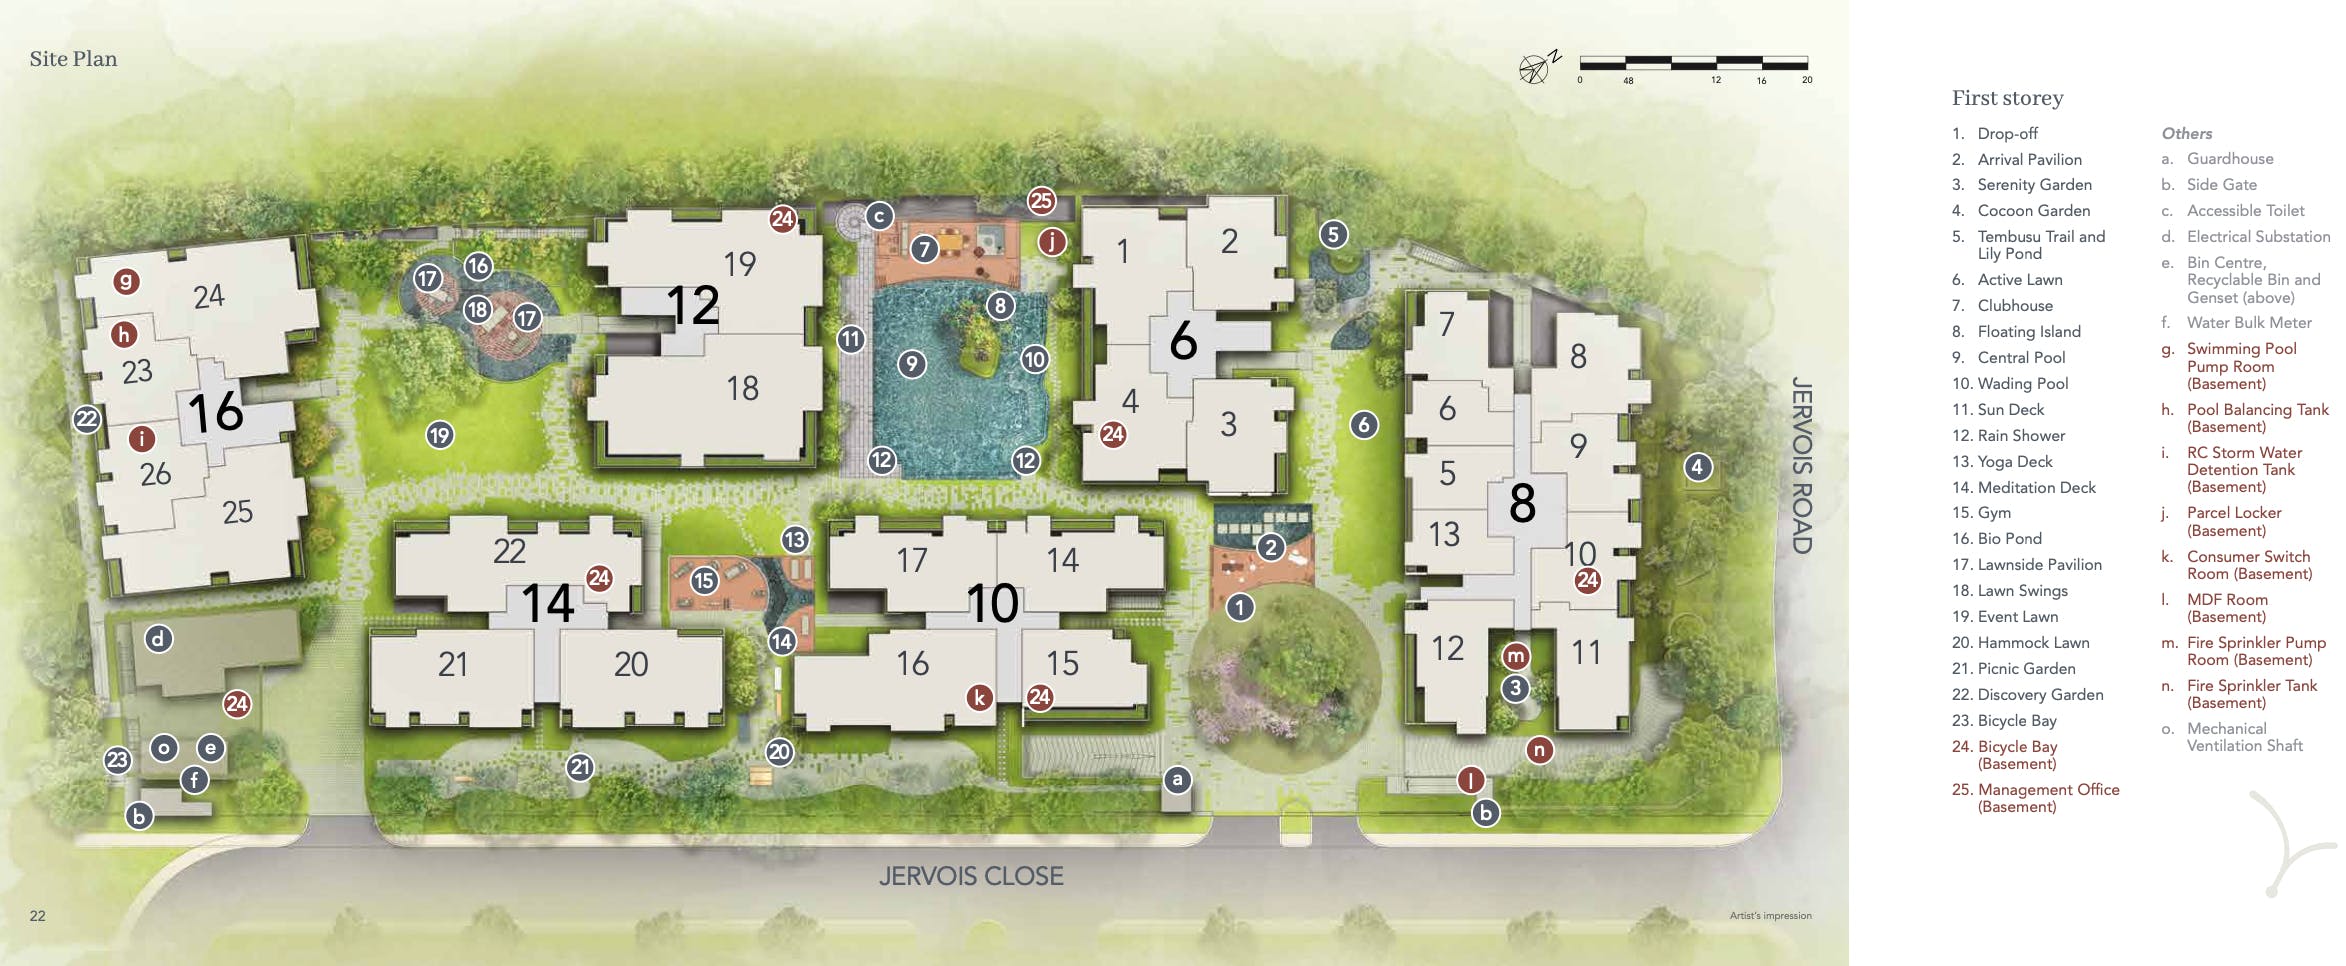 jervois mansion site plan